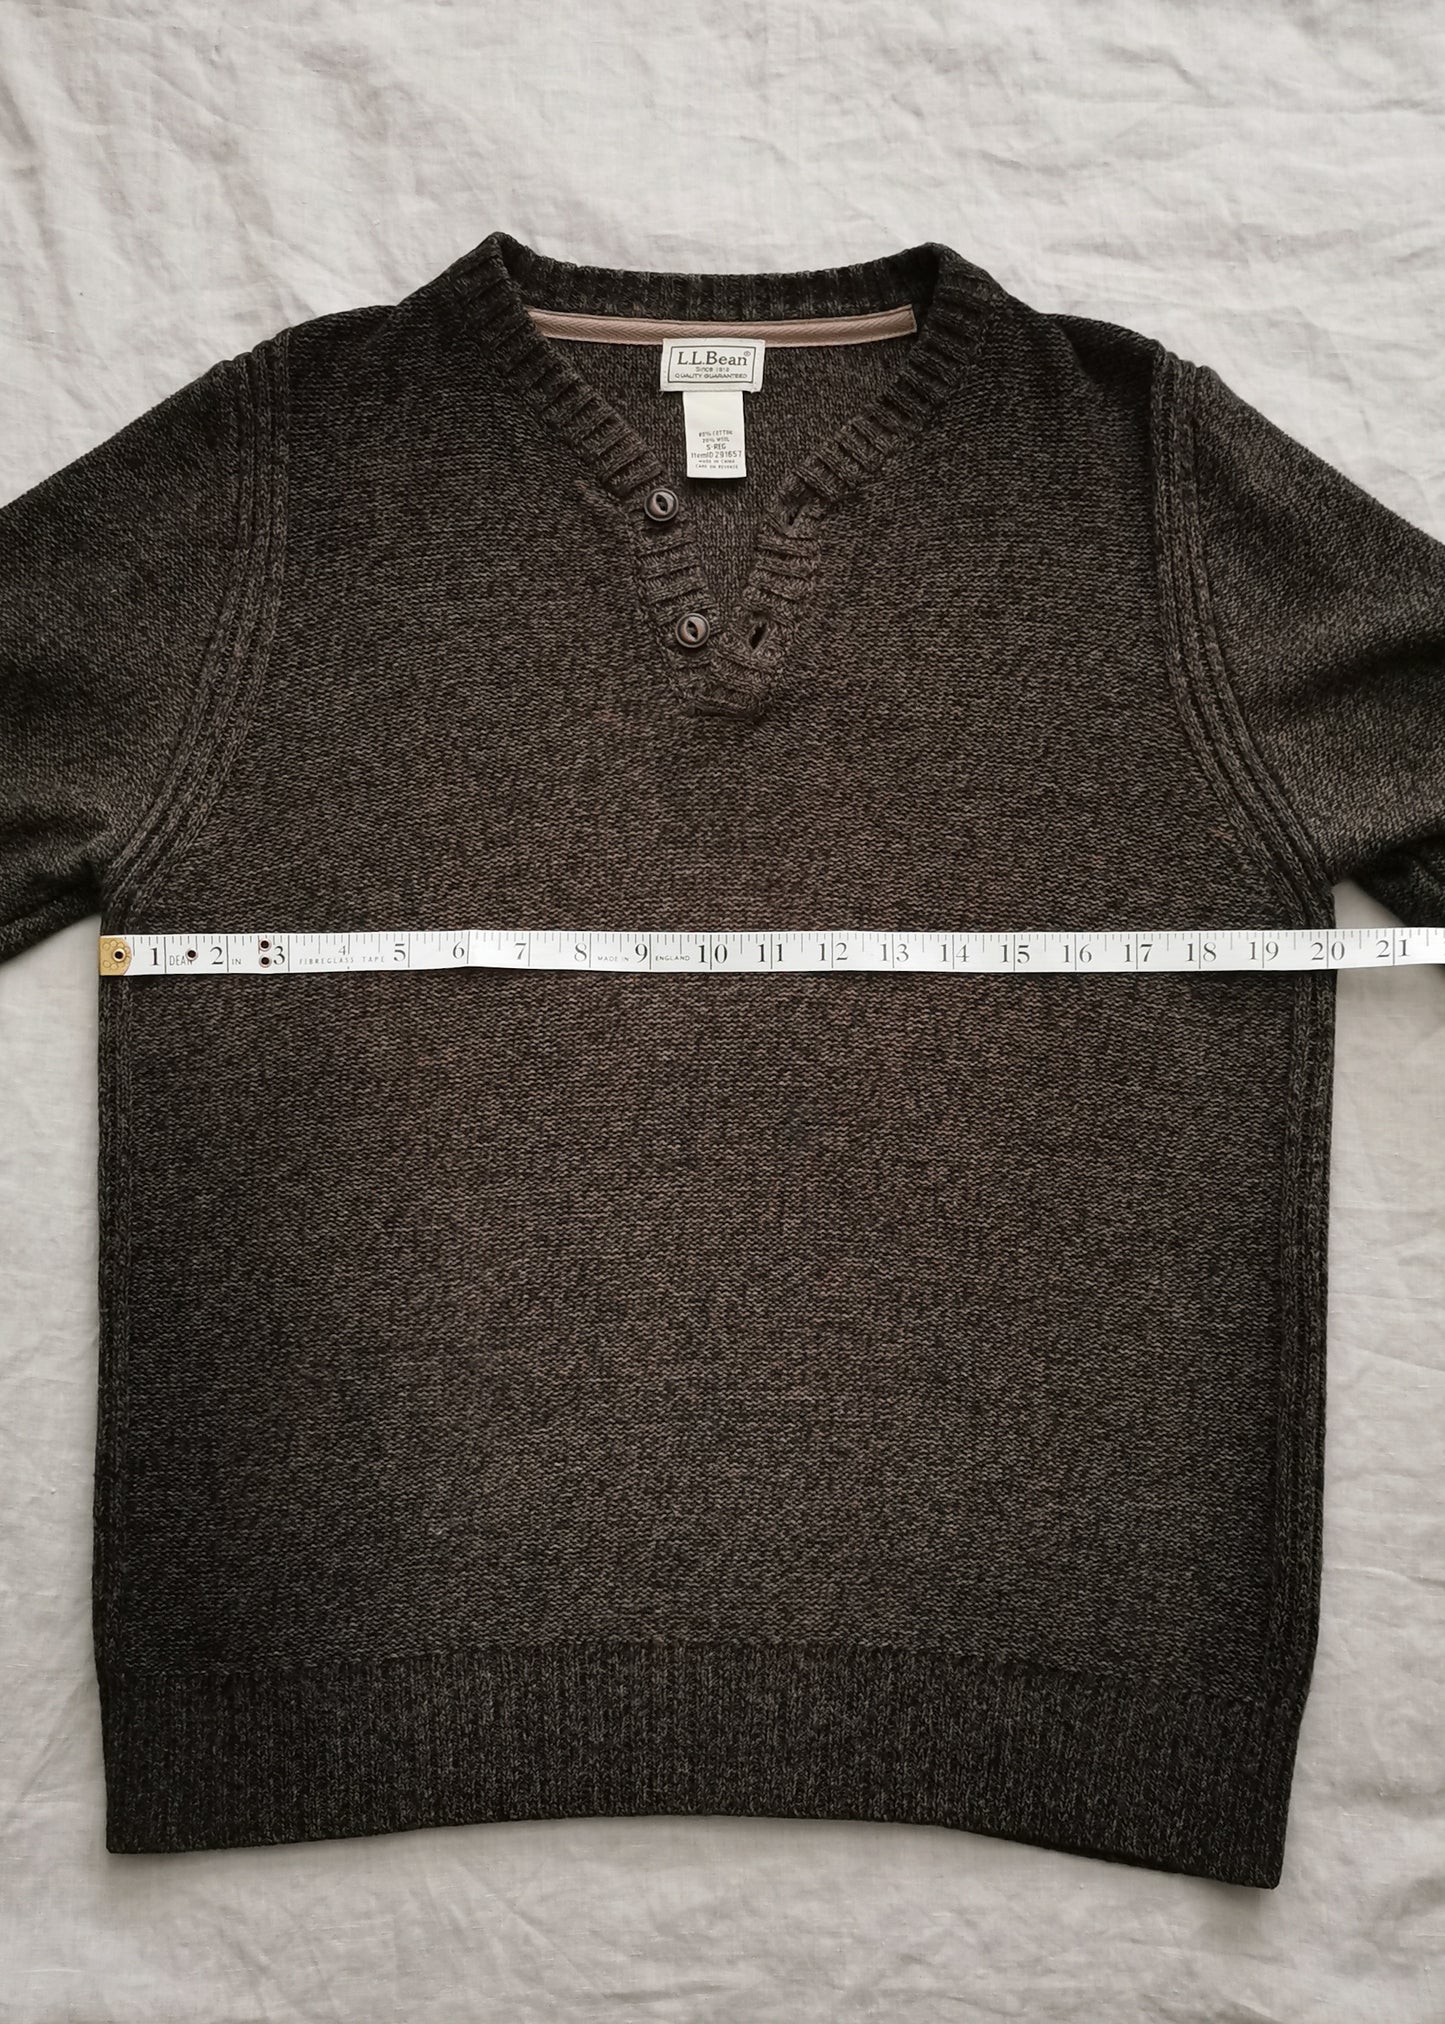 L.L. Bean Cotton & Wool Sweater (S)